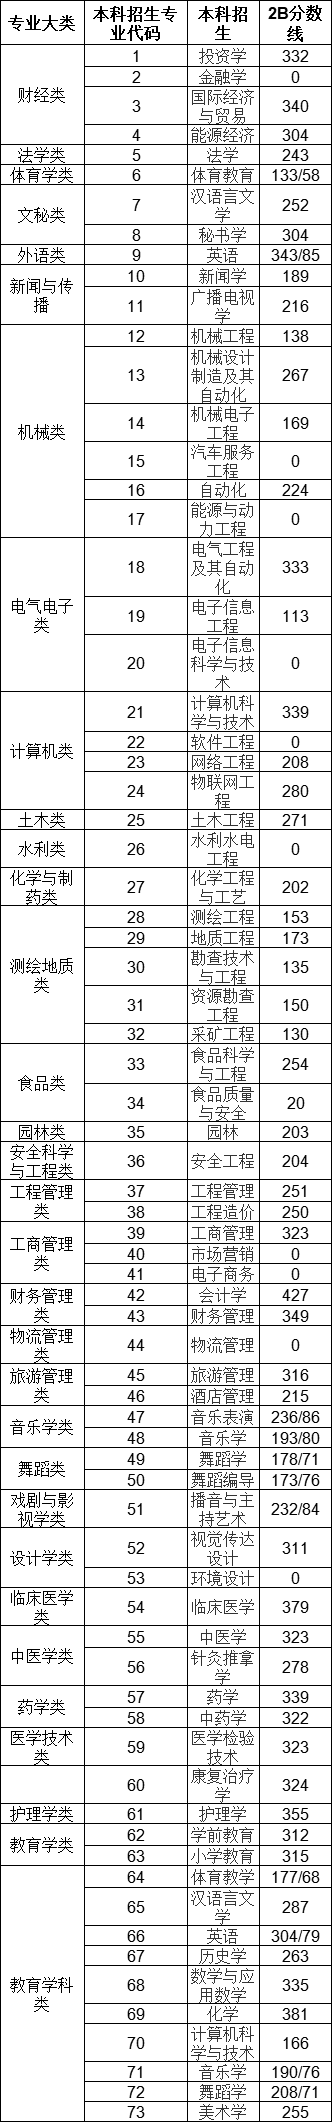 2019山西统招专升本录取分数线汇总.png